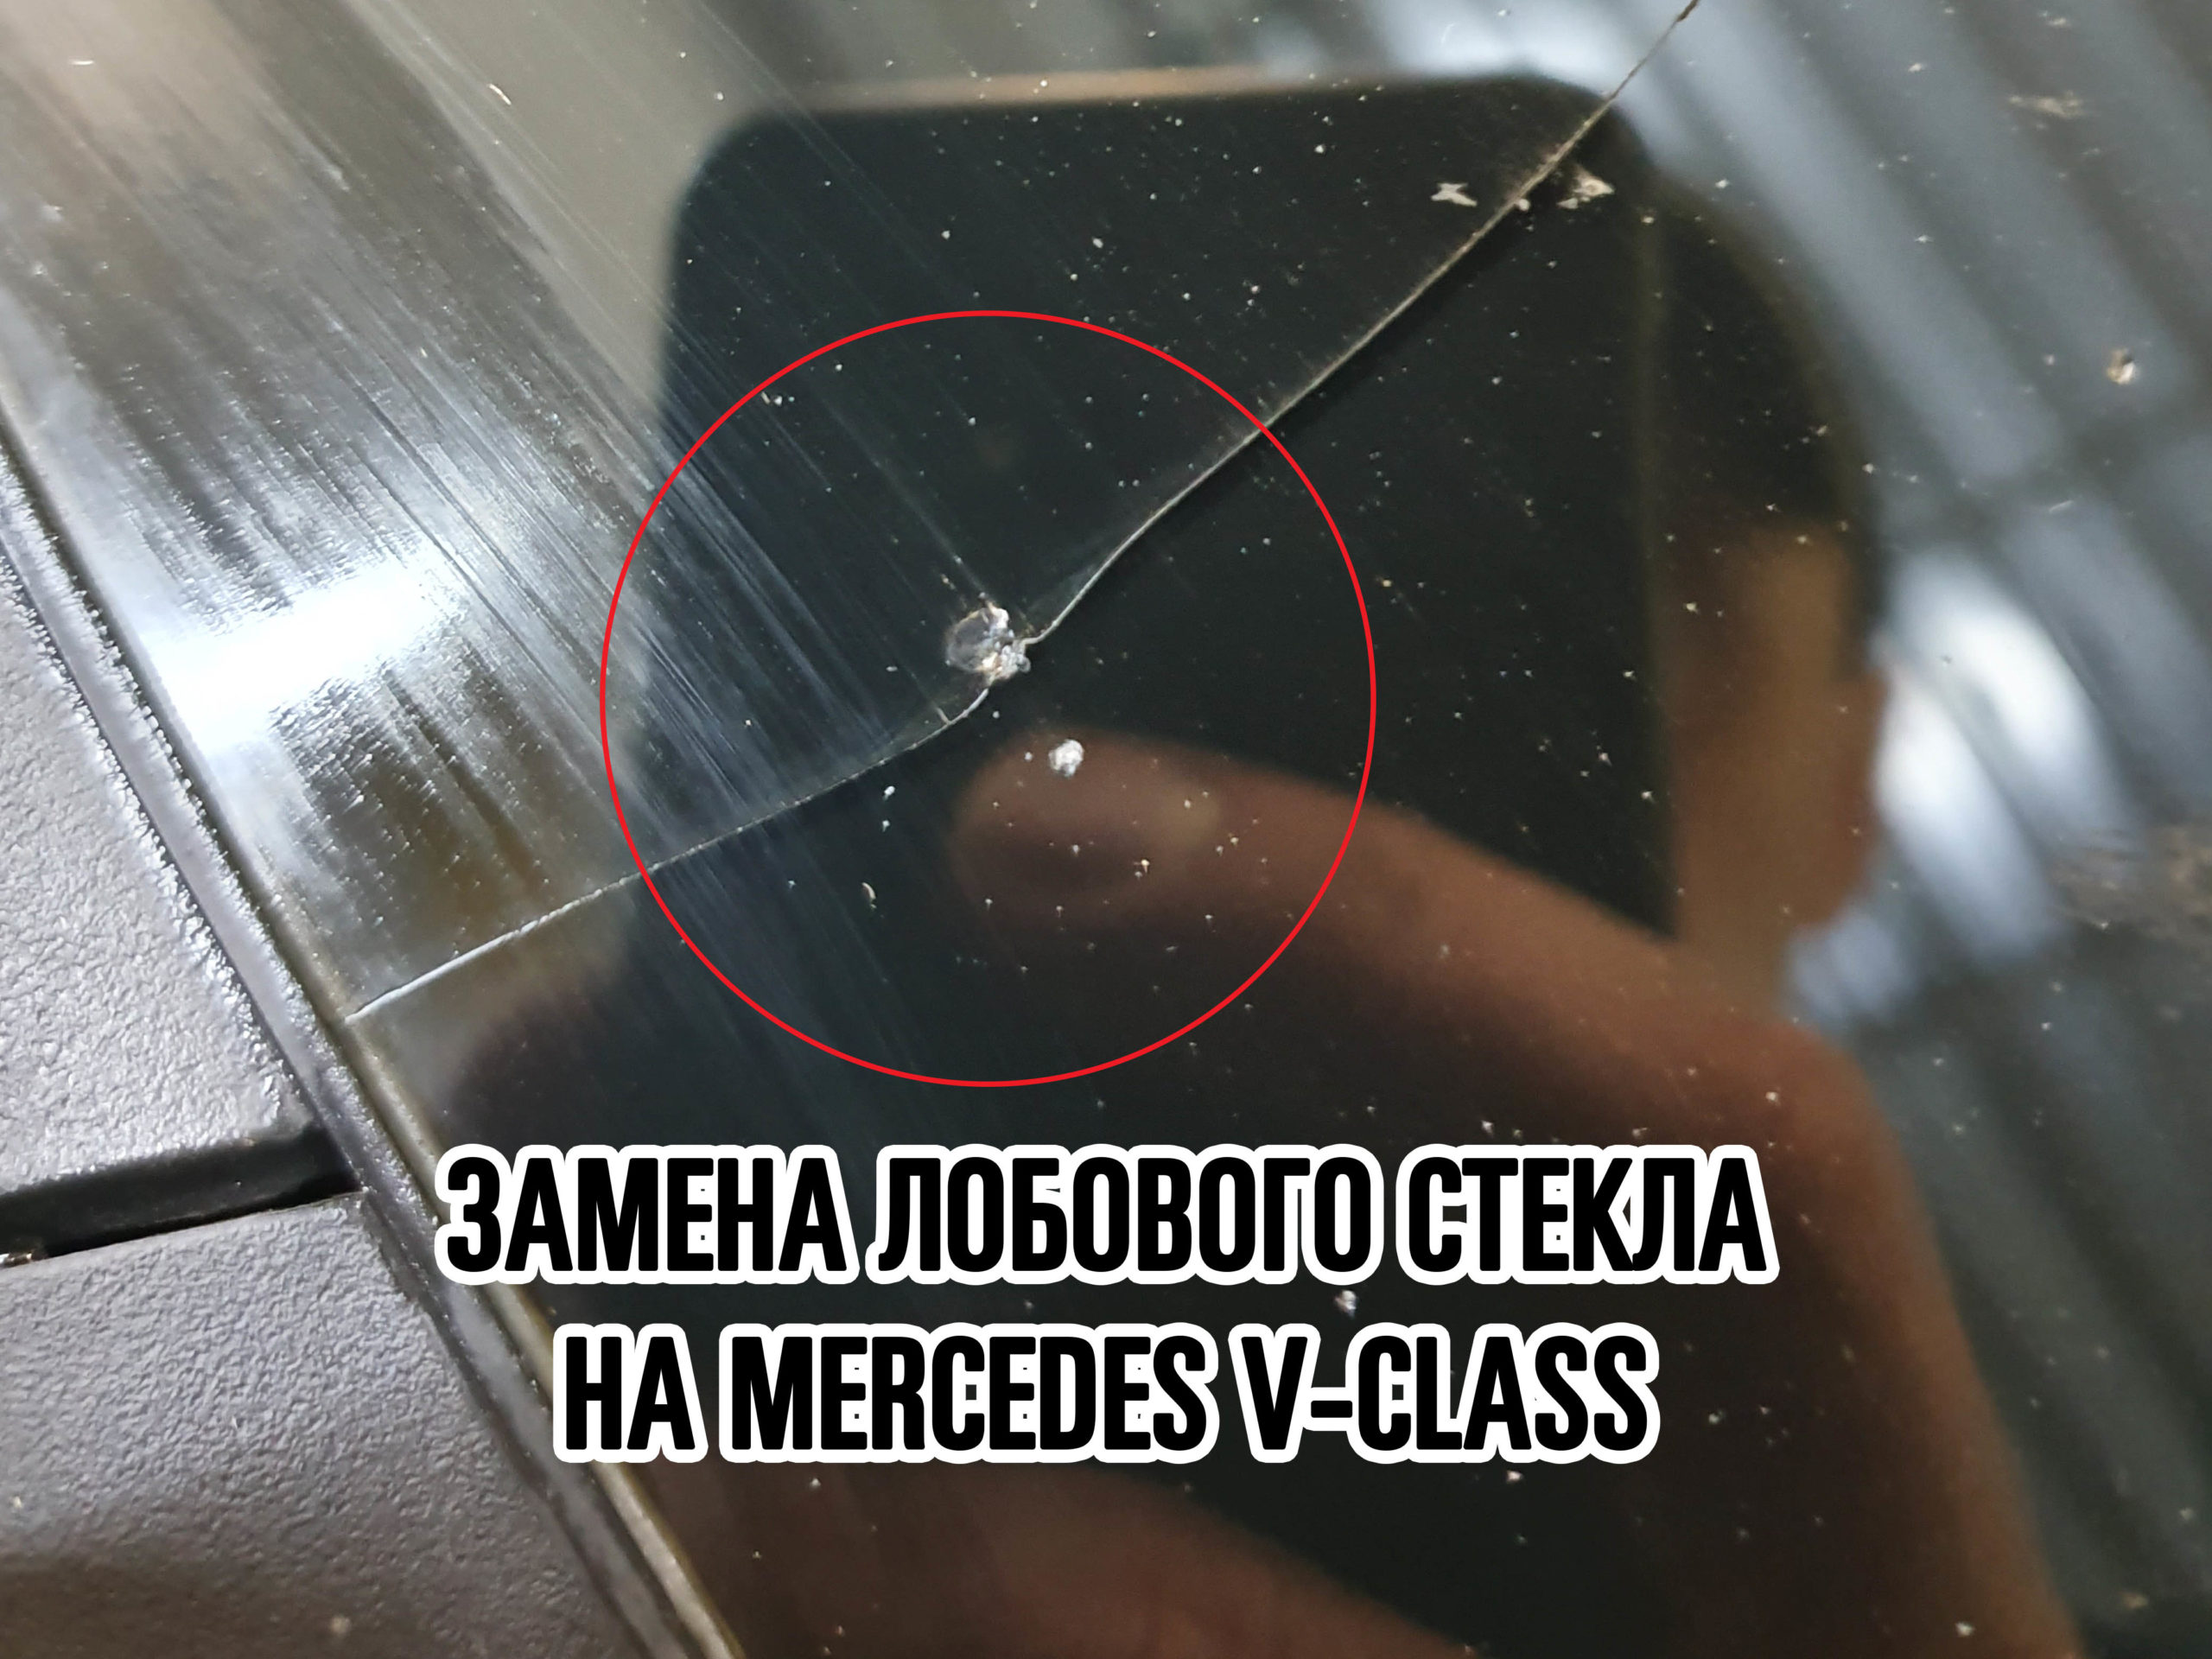 Лобовое стекло на Mercedes V-Class купить и установить в Москве